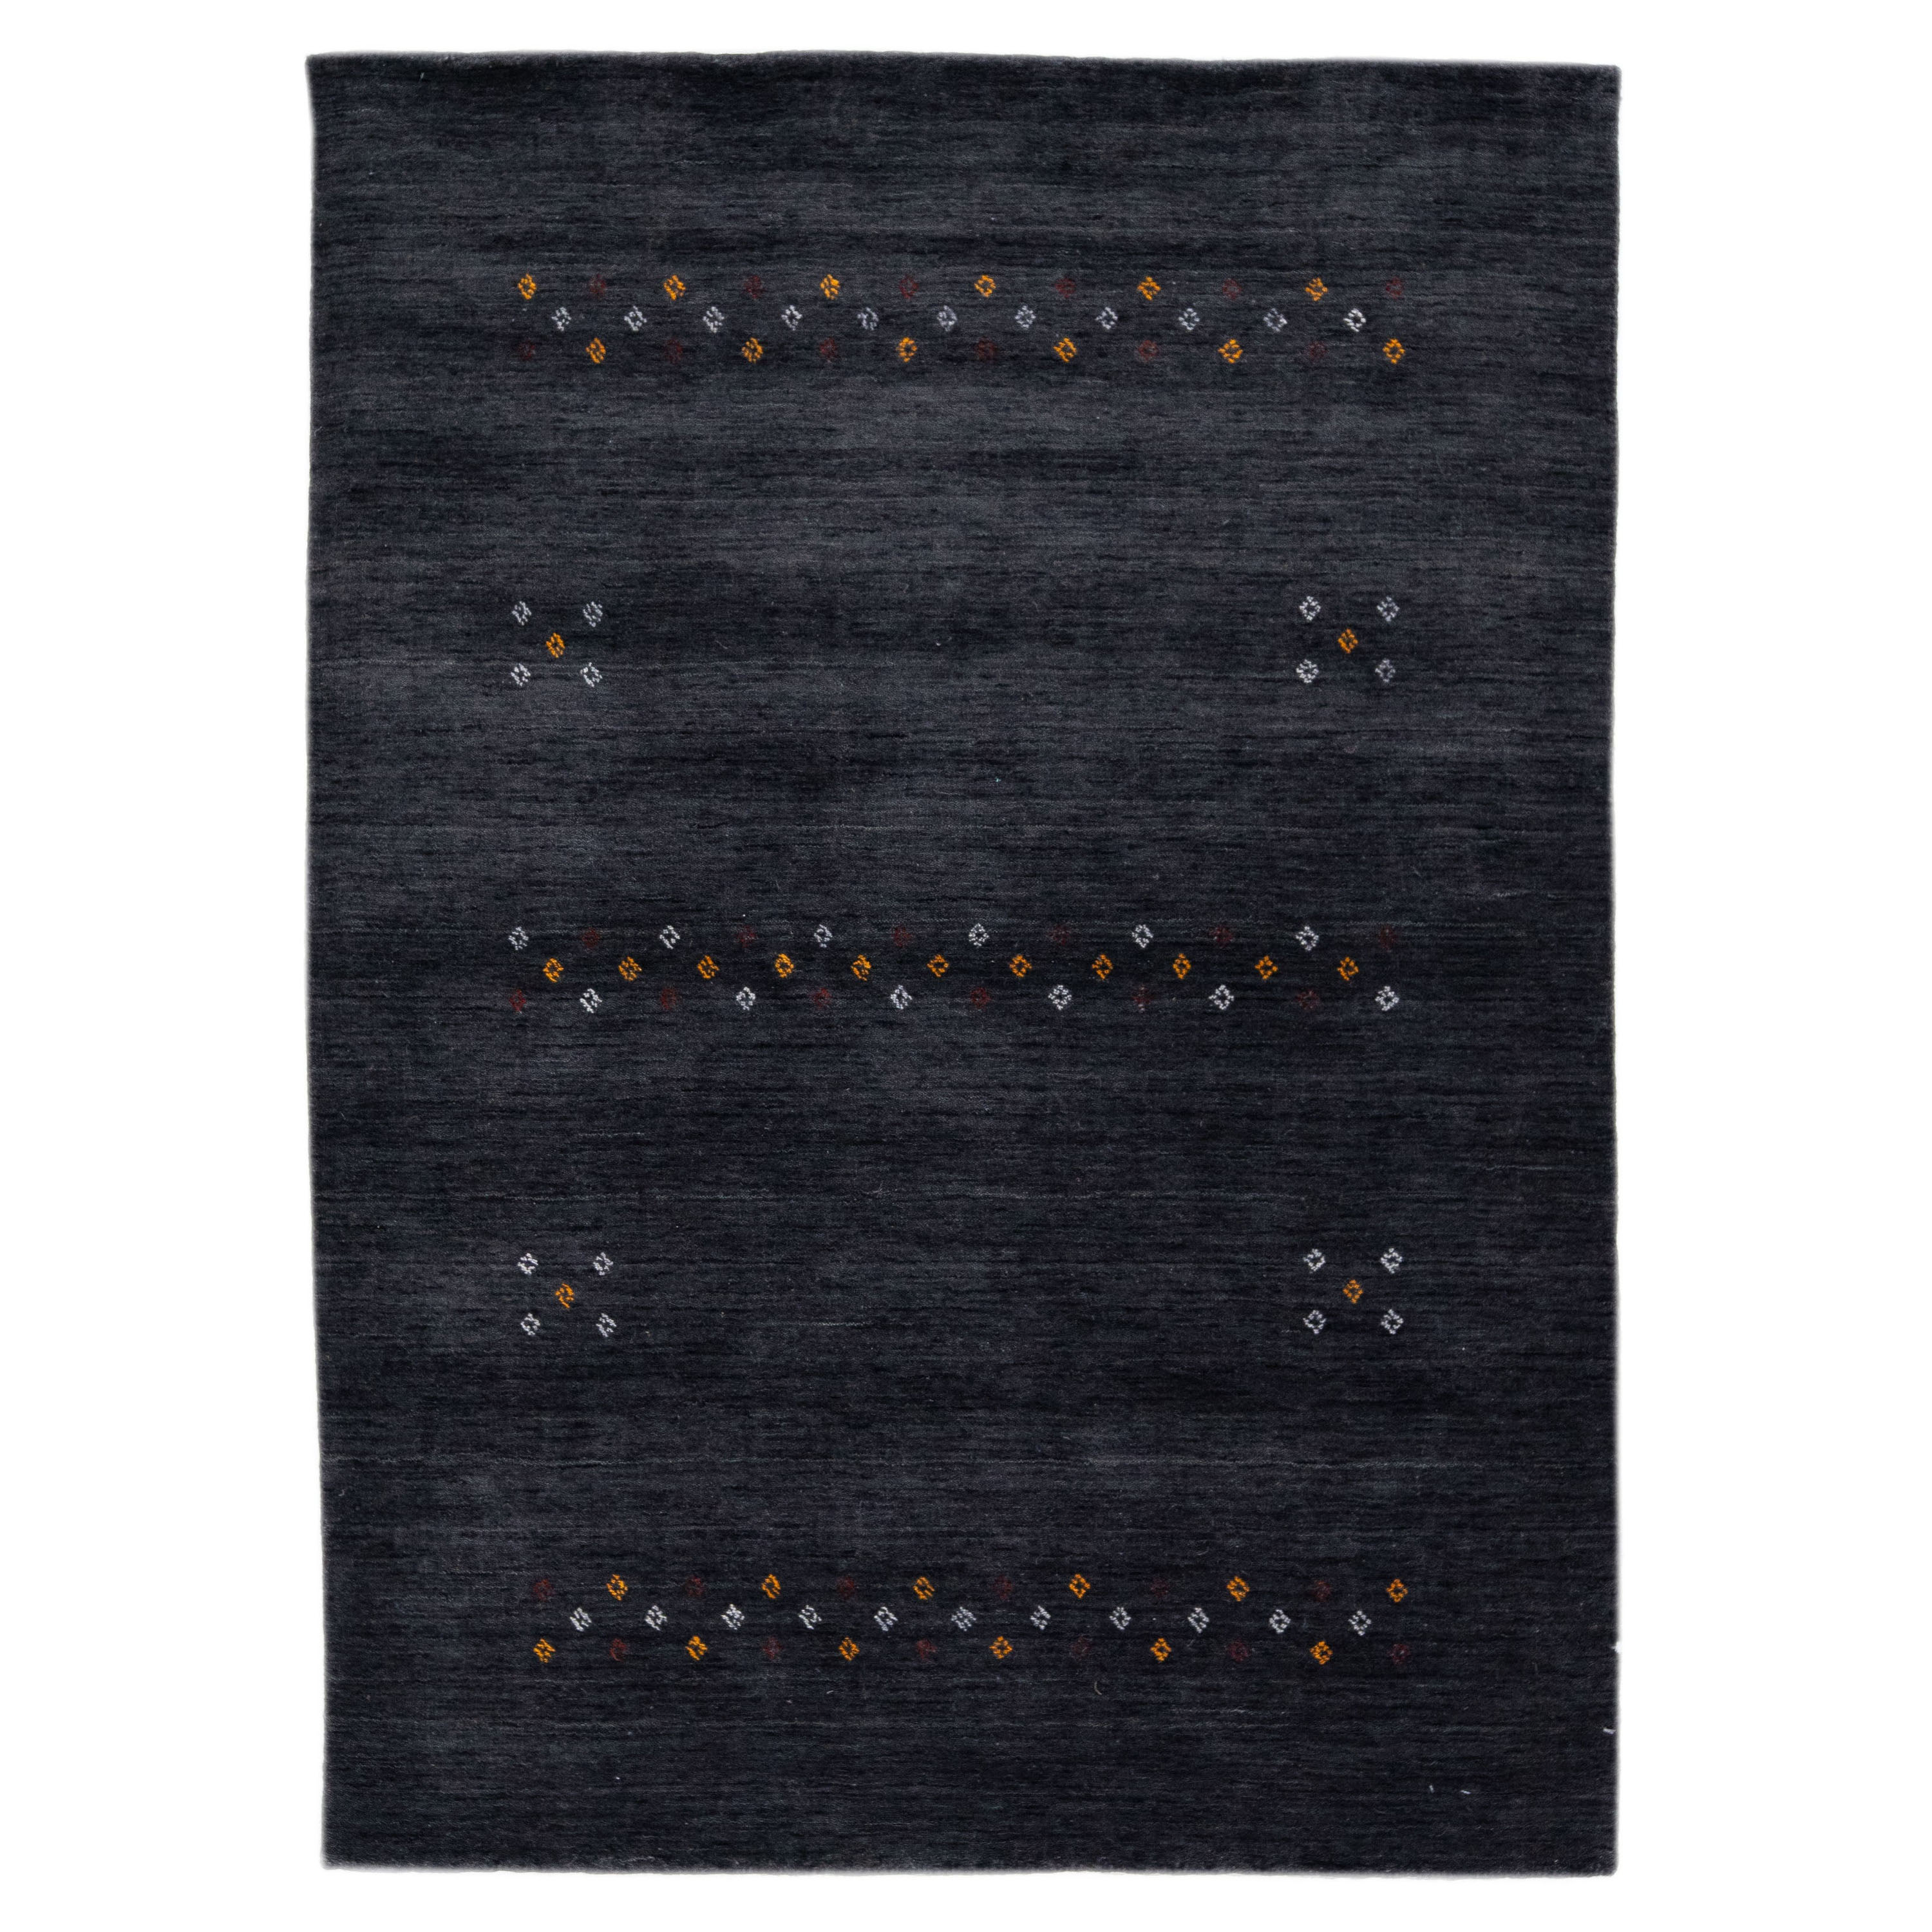 Tapis moderne en laine anthracite de style Gabbeh fait à la main avec un design minimaliste